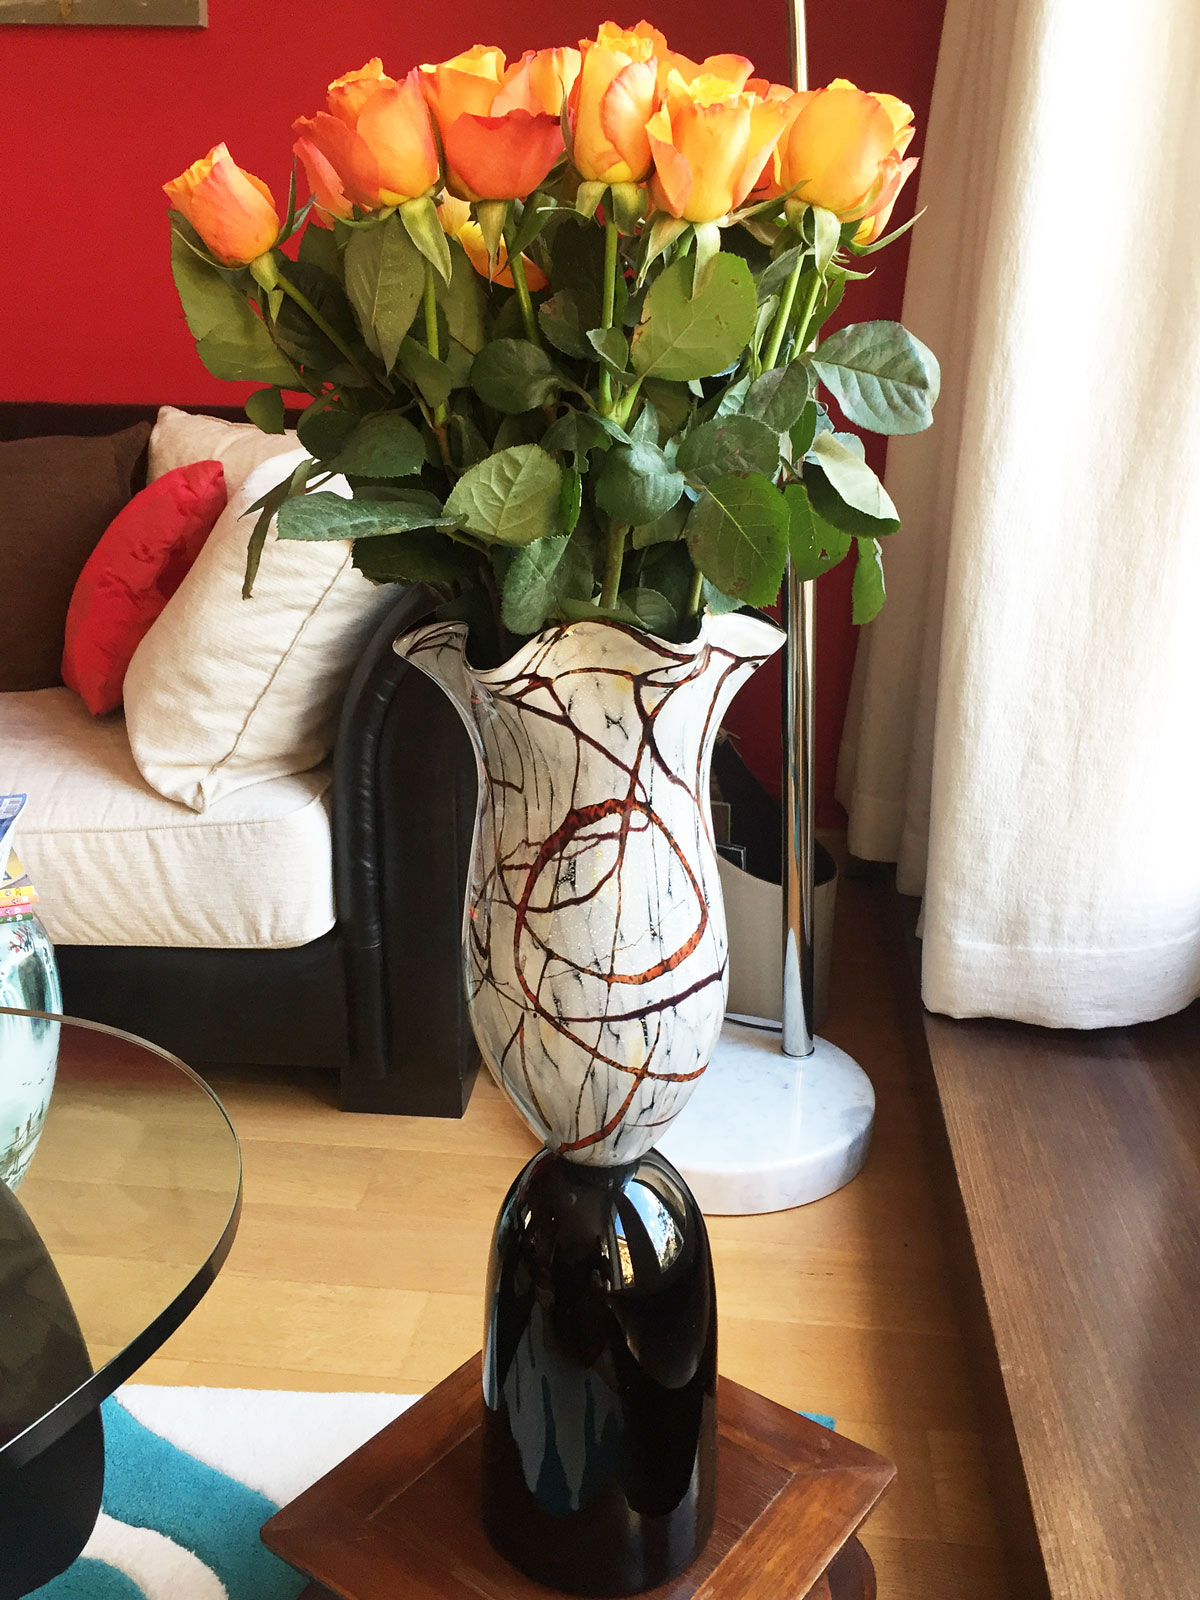 Lieber Alain, herzlichen Dank für das tolle Foto unserer Vase in Deinem Zuhause. ❤️ Herzlichen Dank das Du uns daran teilhaben lässt. Liebe Grüße senden die Kreiner Brüder